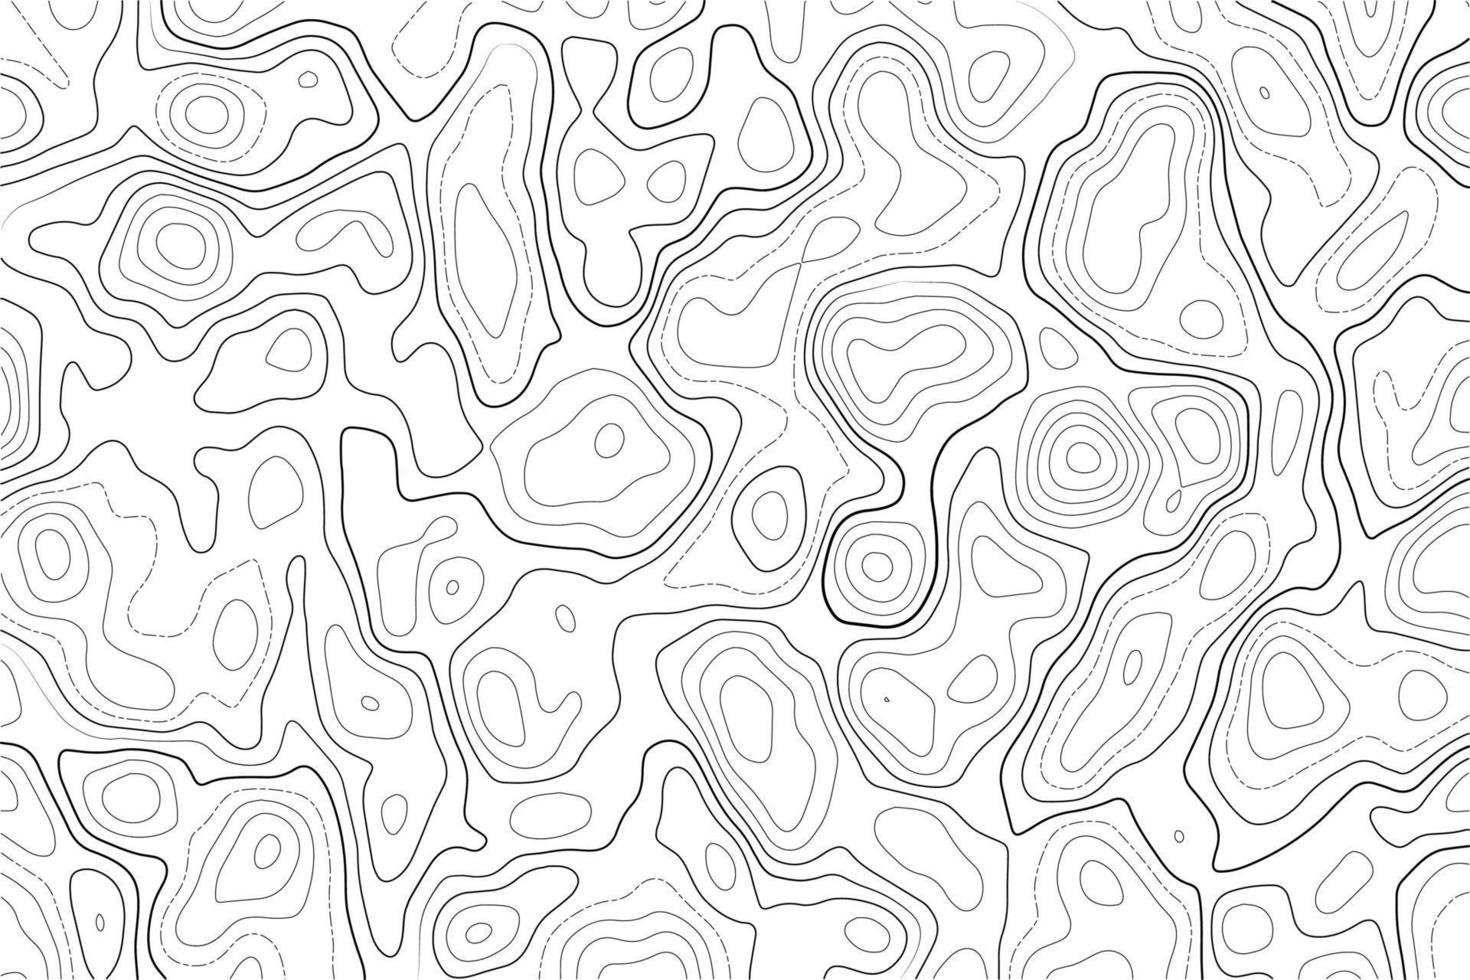 carte topographique sur fond blanc. texture de relief de terrain abstrait de ligne de contour. paysage ondulé géographique. illustration vectorielle. vecteur